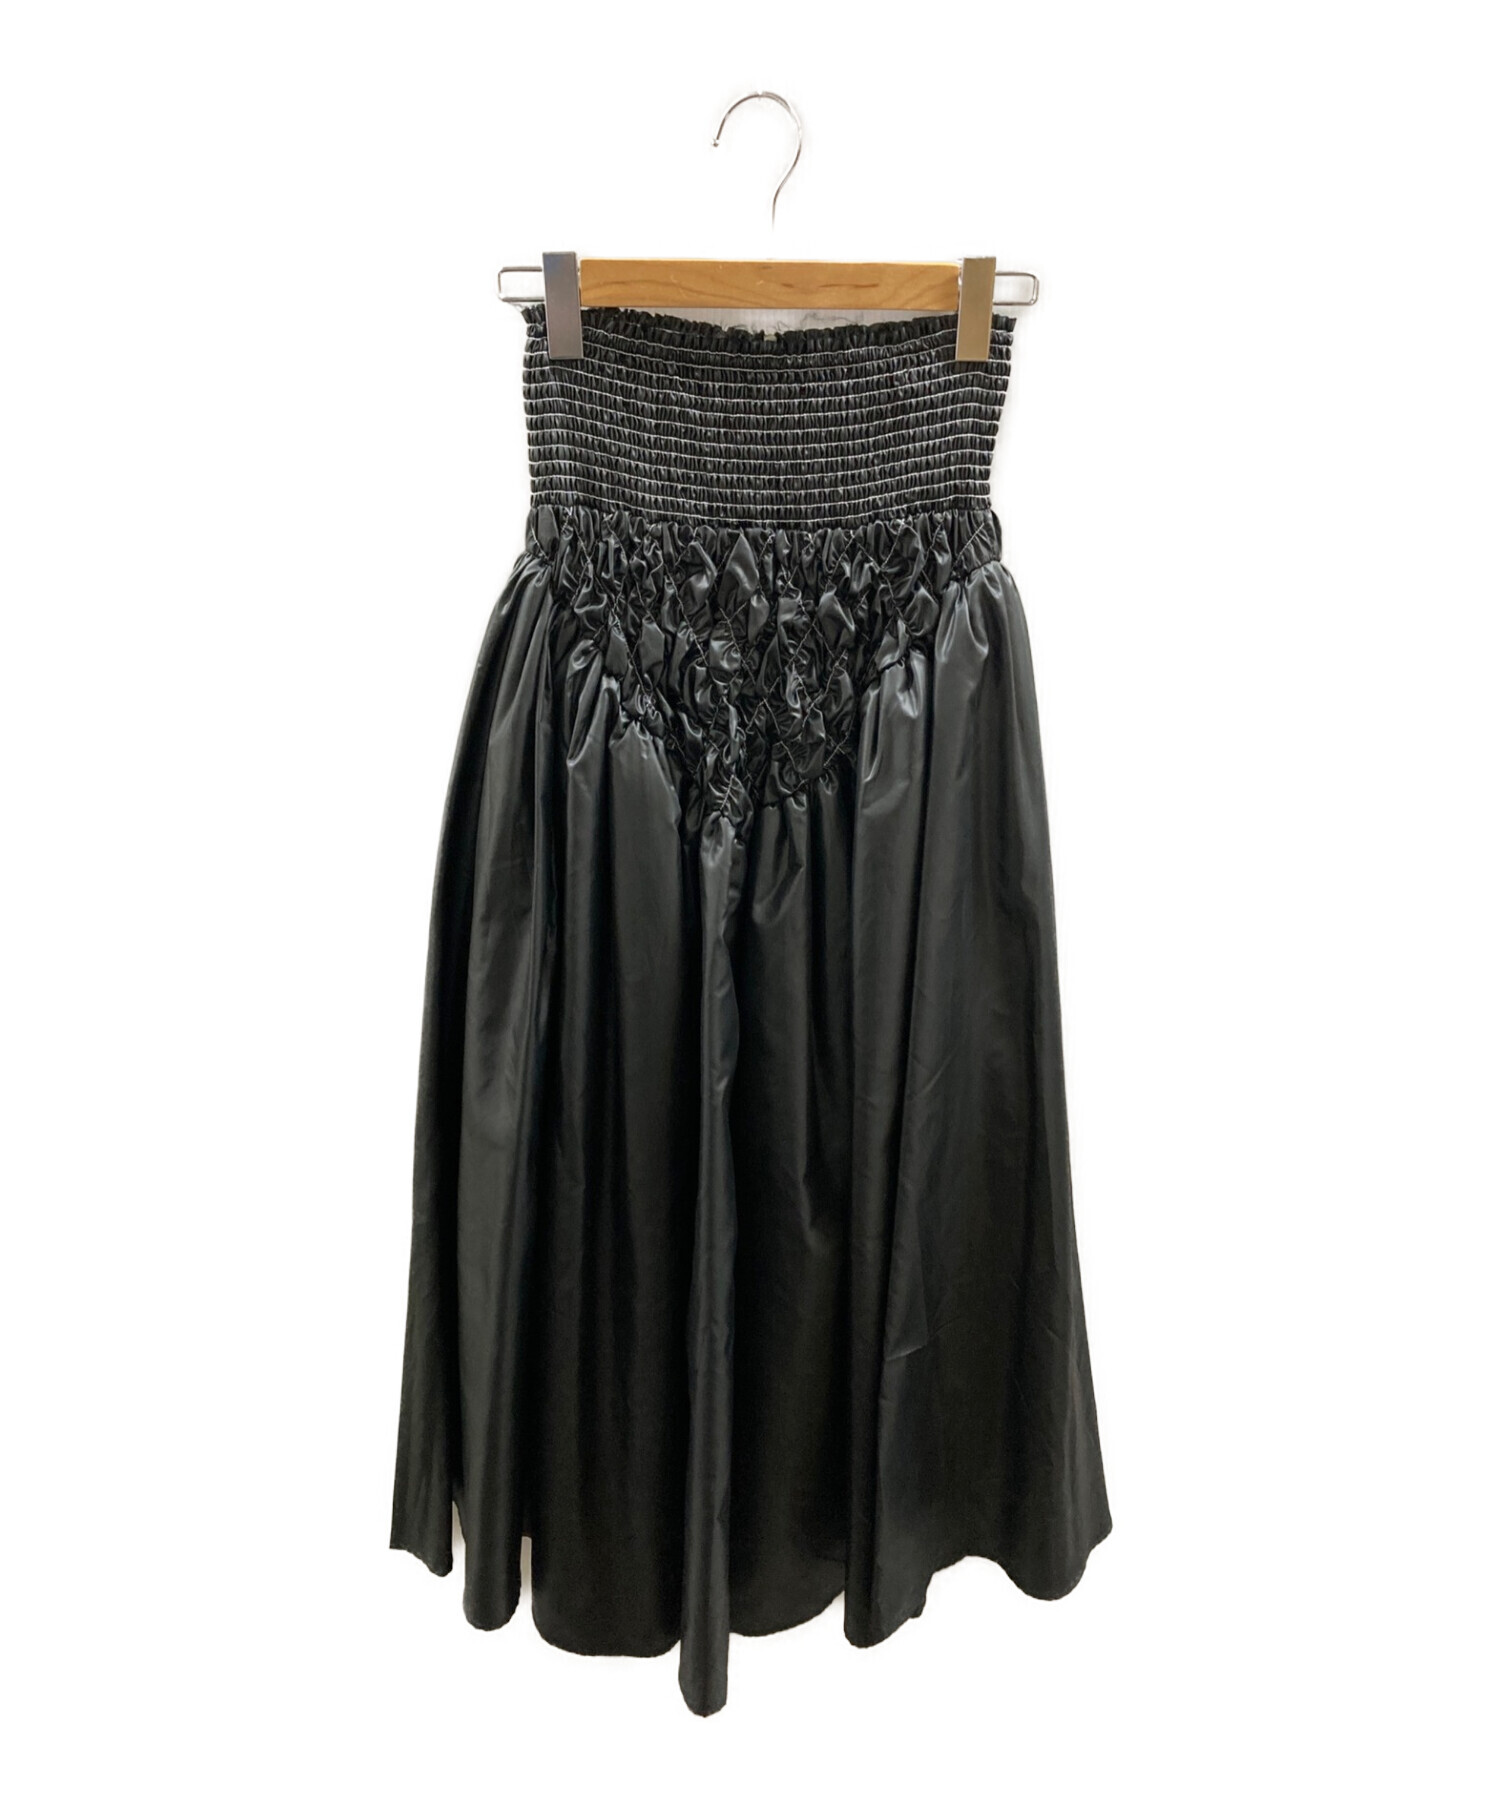 MAISON SPECIAL (メゾンスペシャル) ハンドシャーリングボリュームタフタスカート ブラック サイズ:FREE